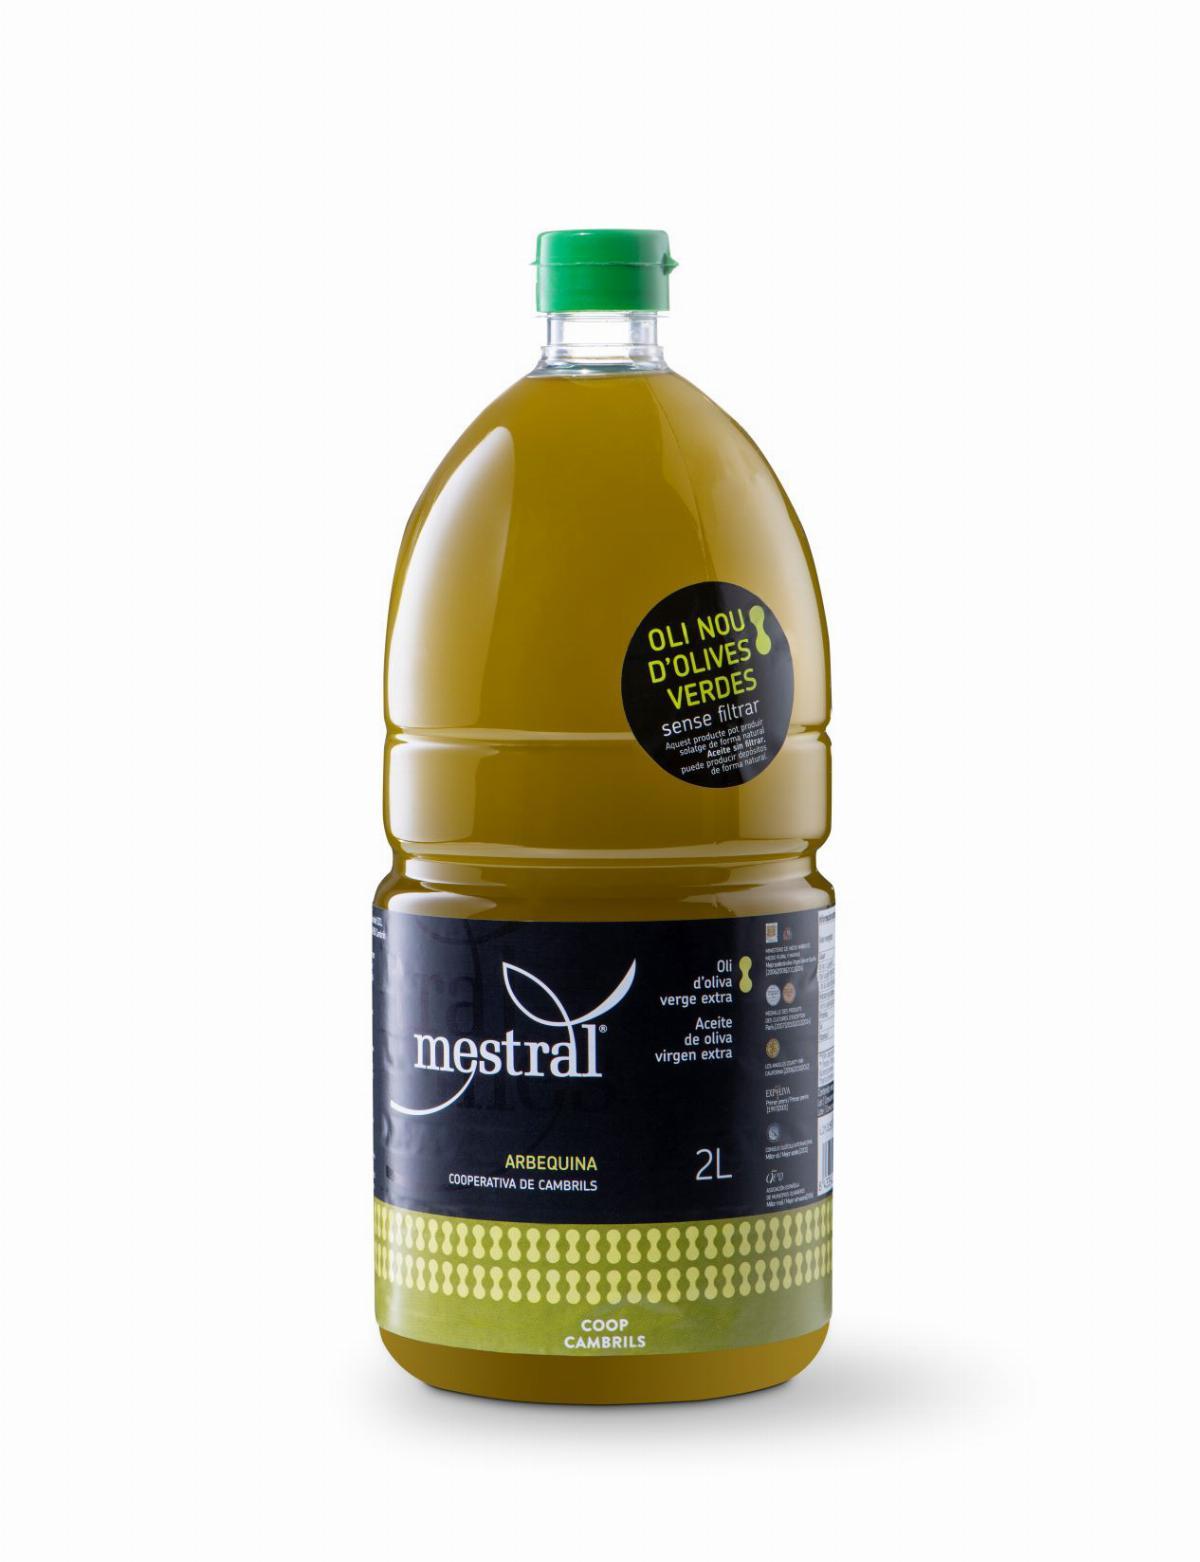 Huile d'olive et Condiments - CAIXA Oli d'Oliva Verge Extra Mestral sense filtrar, plàstic 2 litres, CAT-ES - Mestral Cambrils